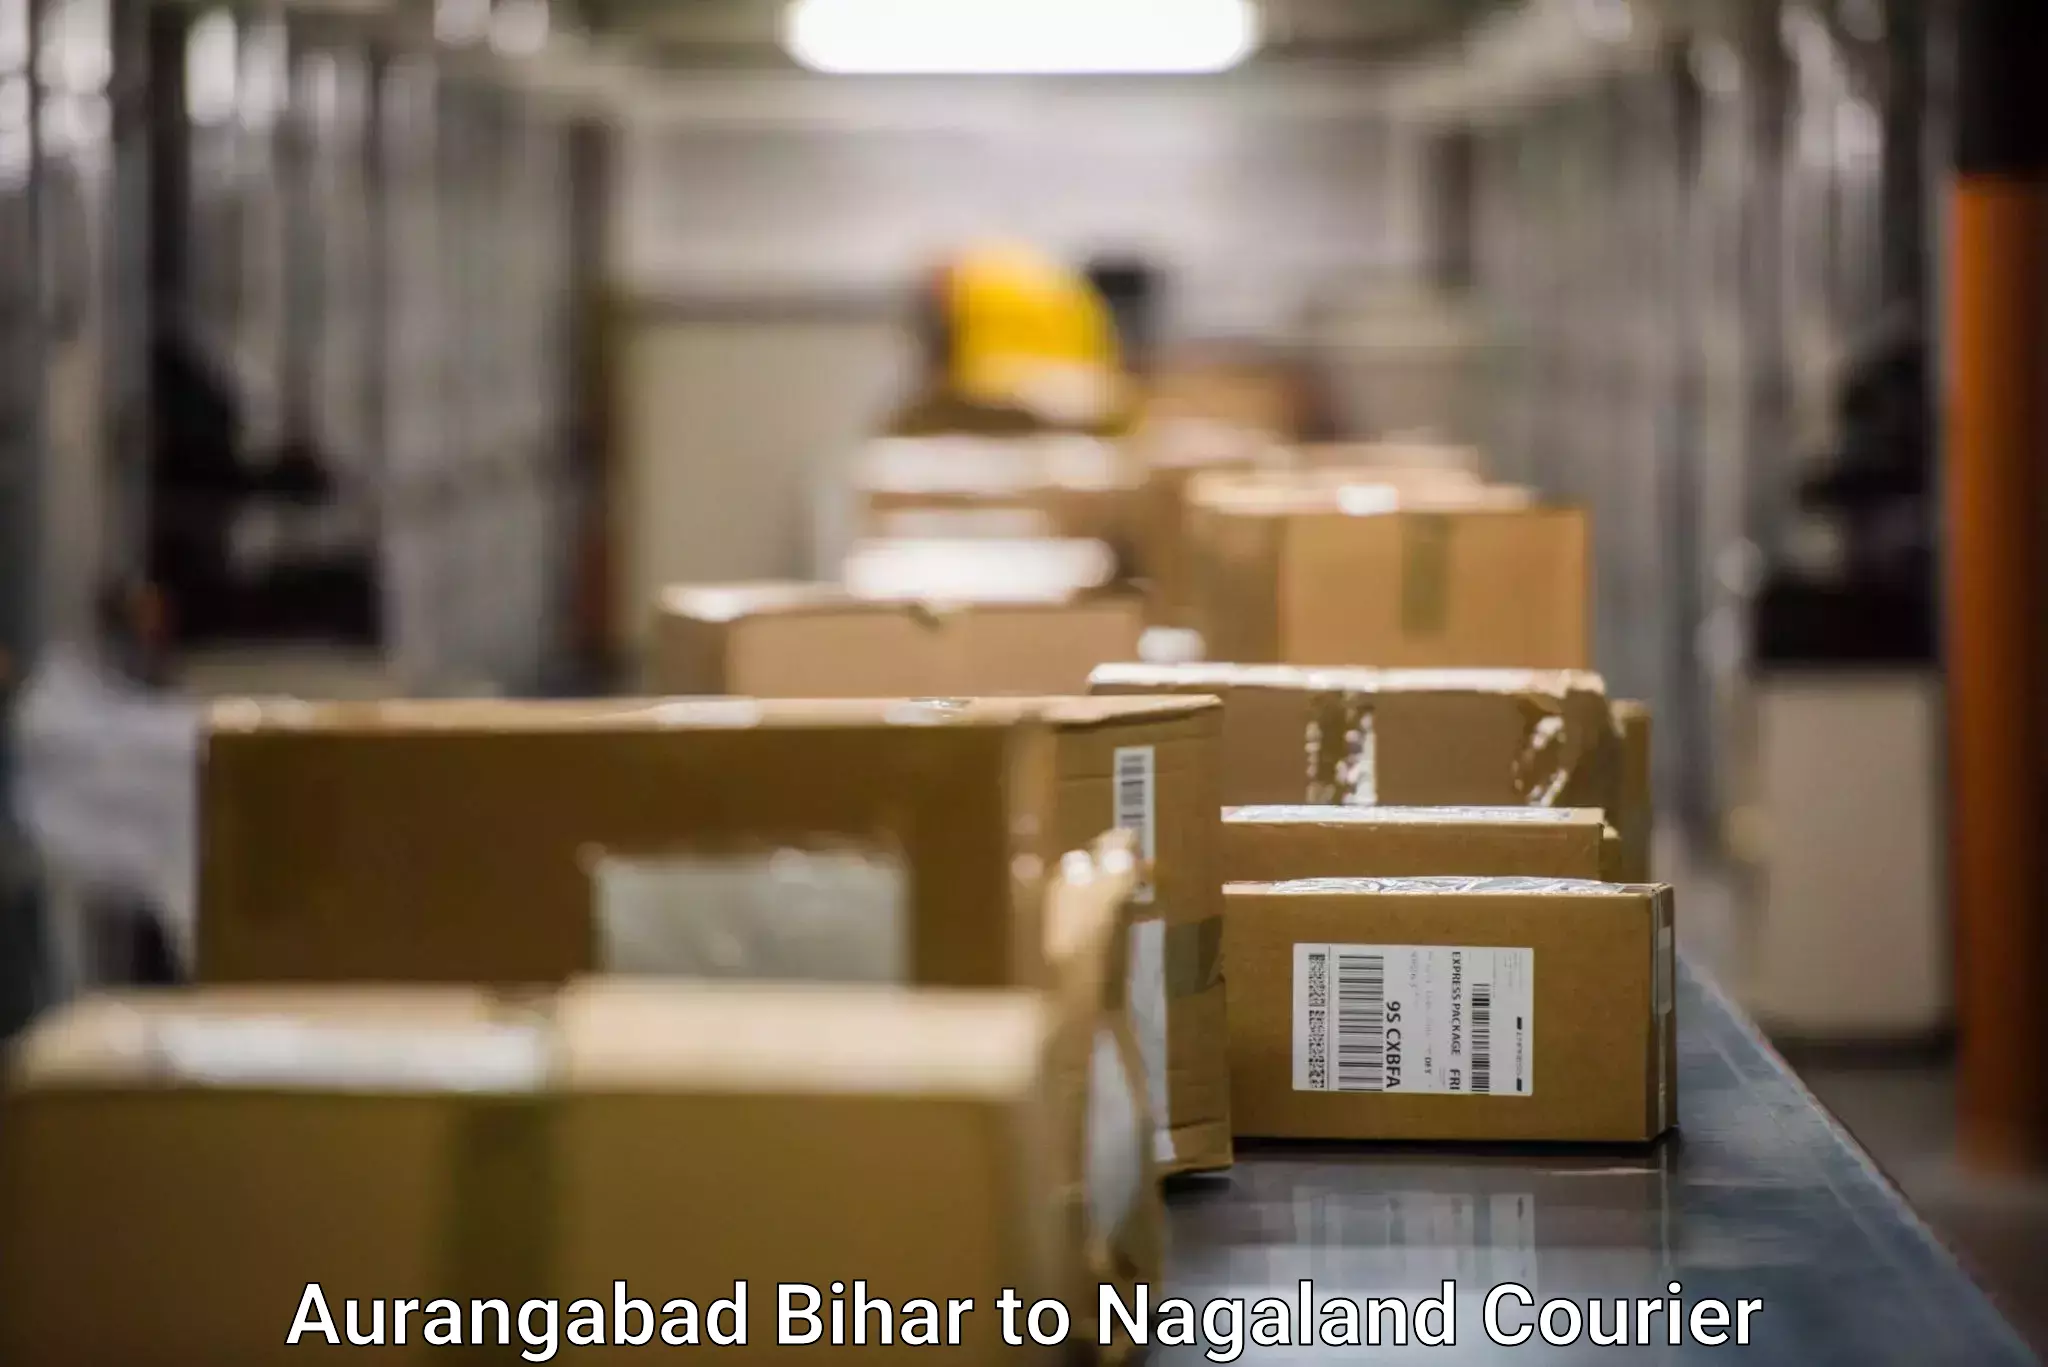 Fast parcel dispatch in Aurangabad Bihar to Chumukedima